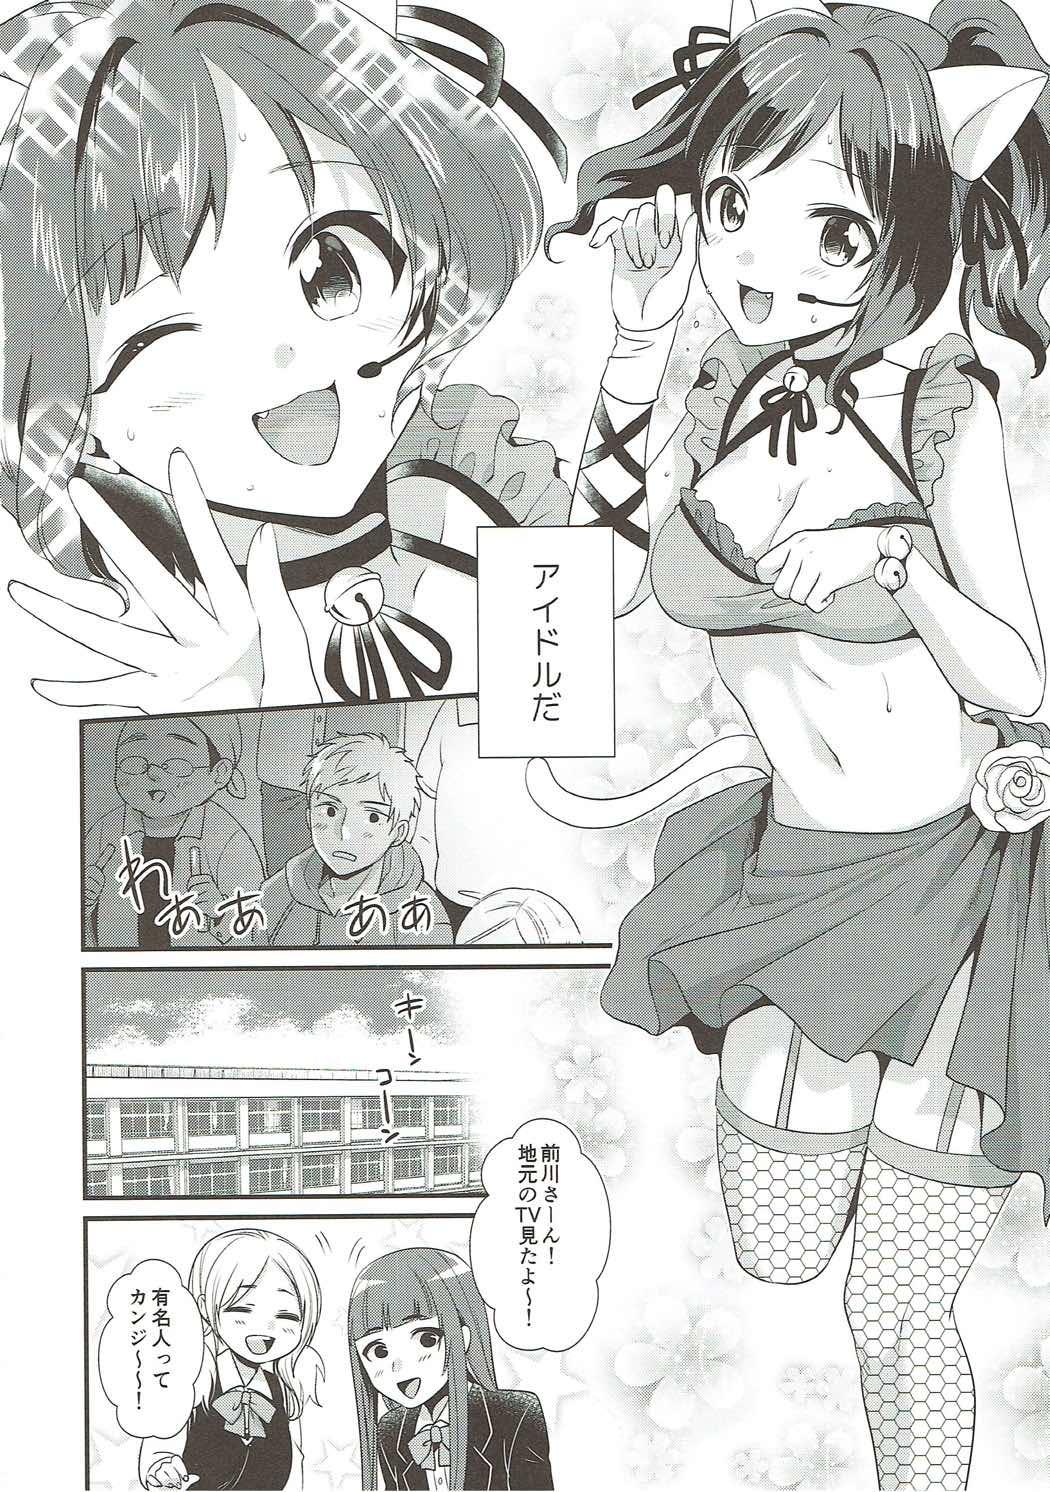 Hiddencam Tonari no Seki wa Maekawa Miku - The idolmaster Ssbbw - Page 5